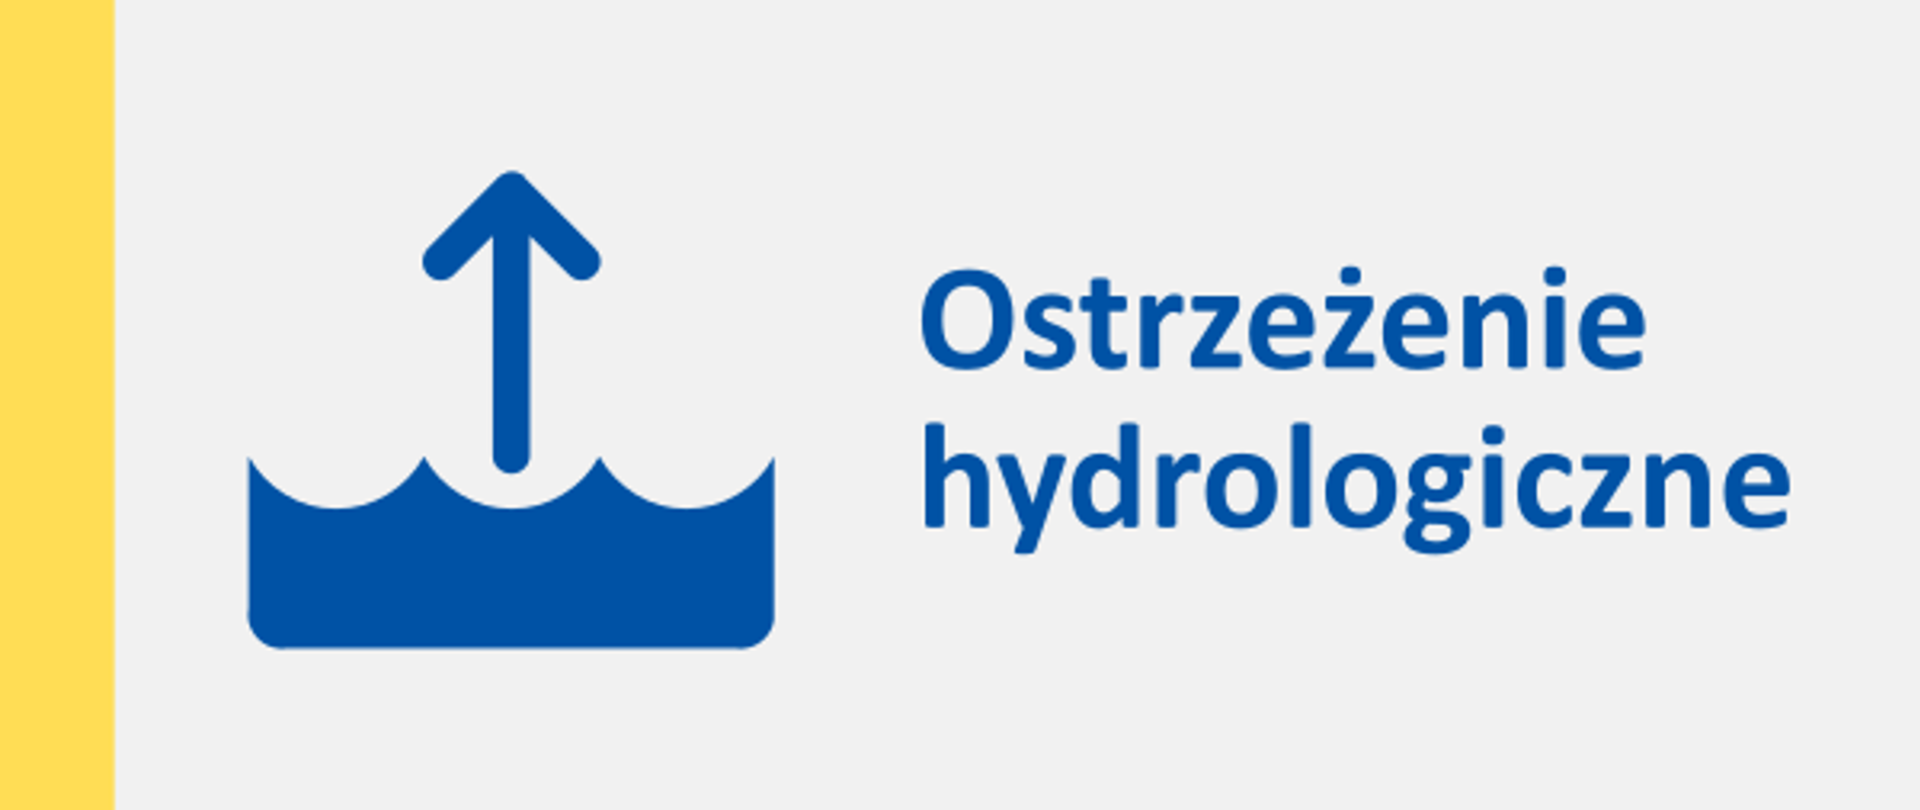 LOGO z napisem Ostrzeżenie hydrologiczne, z lewej strony napisu ikona 